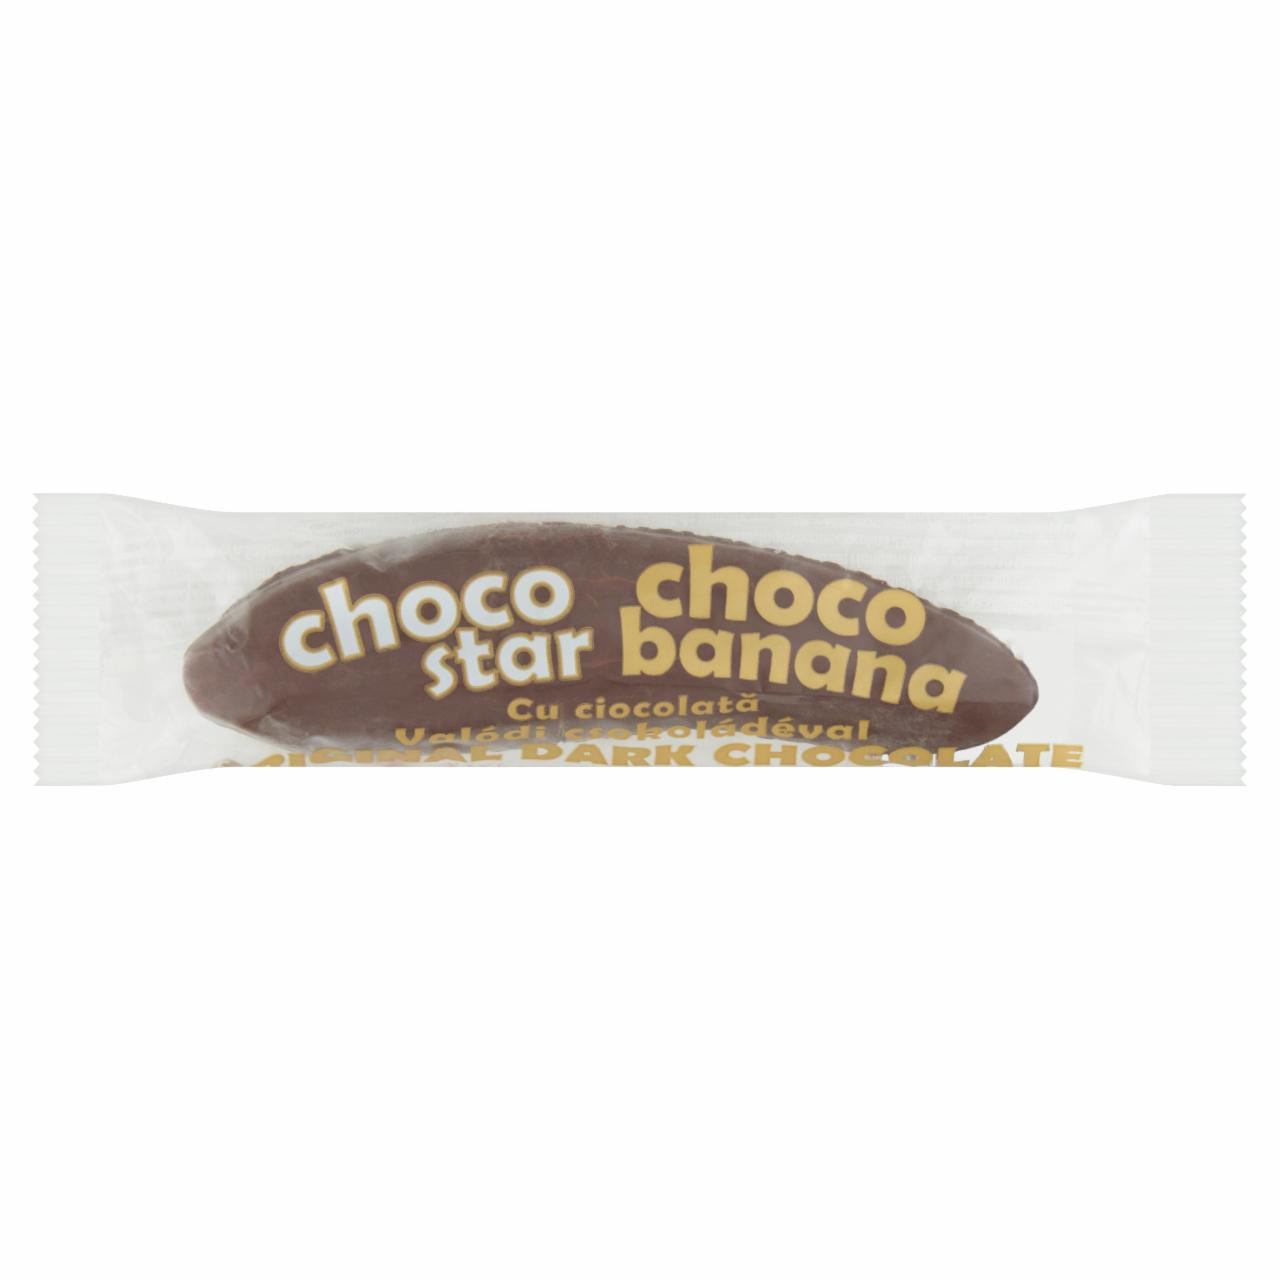 Képek - Choco Star Choco Banana étcsokoládéba mártott banán ízű szelet 20 g